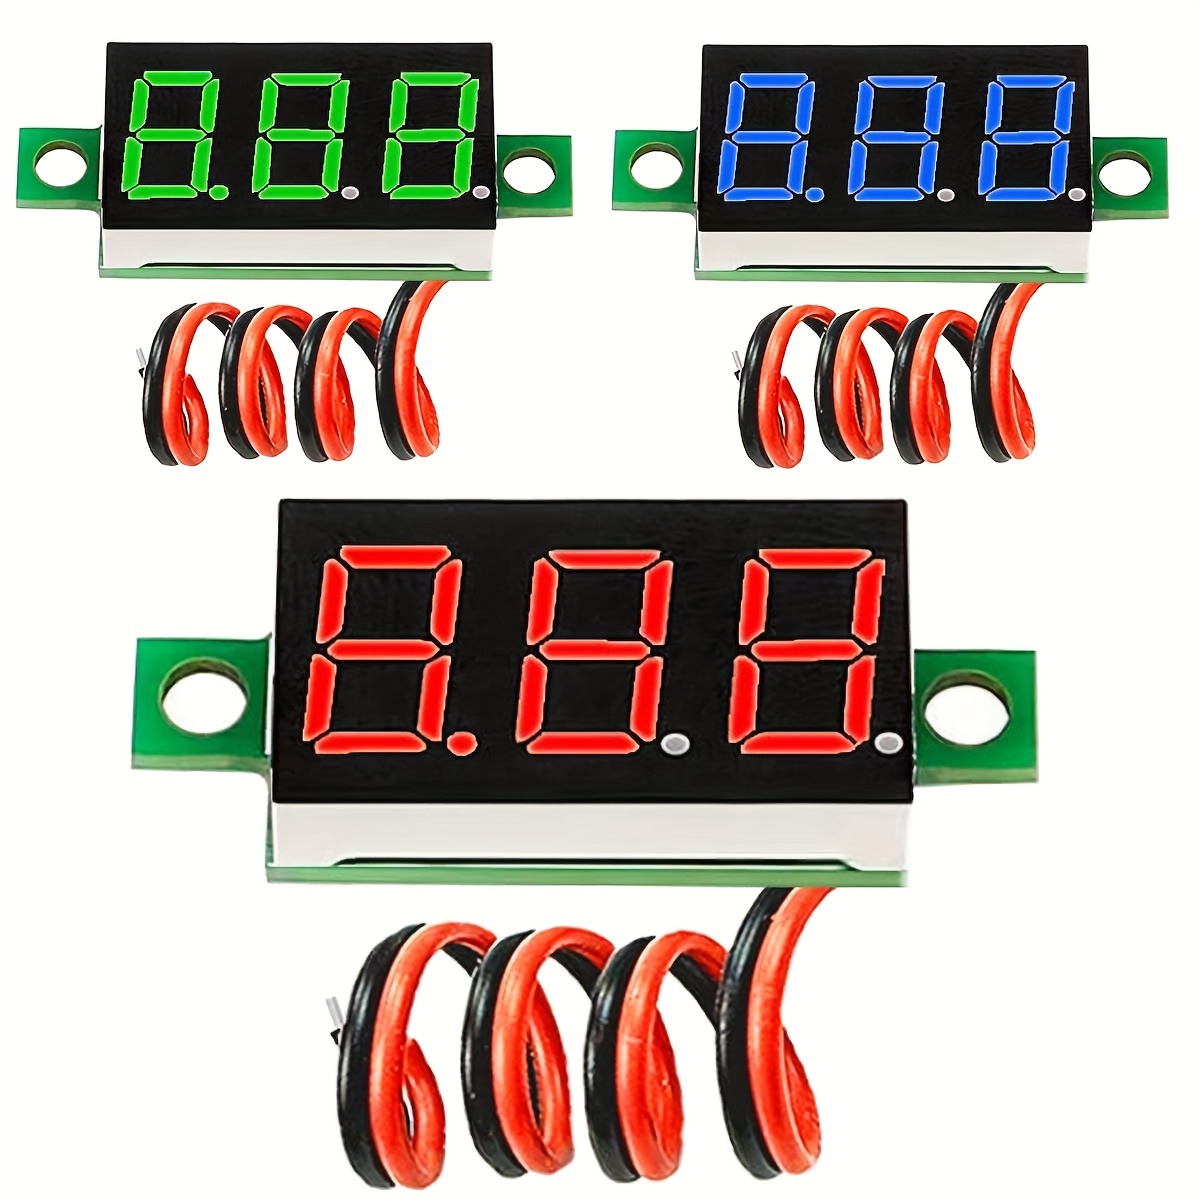 Digitale LED-Anzeige Panel Meter Voltmeter Auto Motorrad Spannung Messgerät  für Fahrzeug 12v